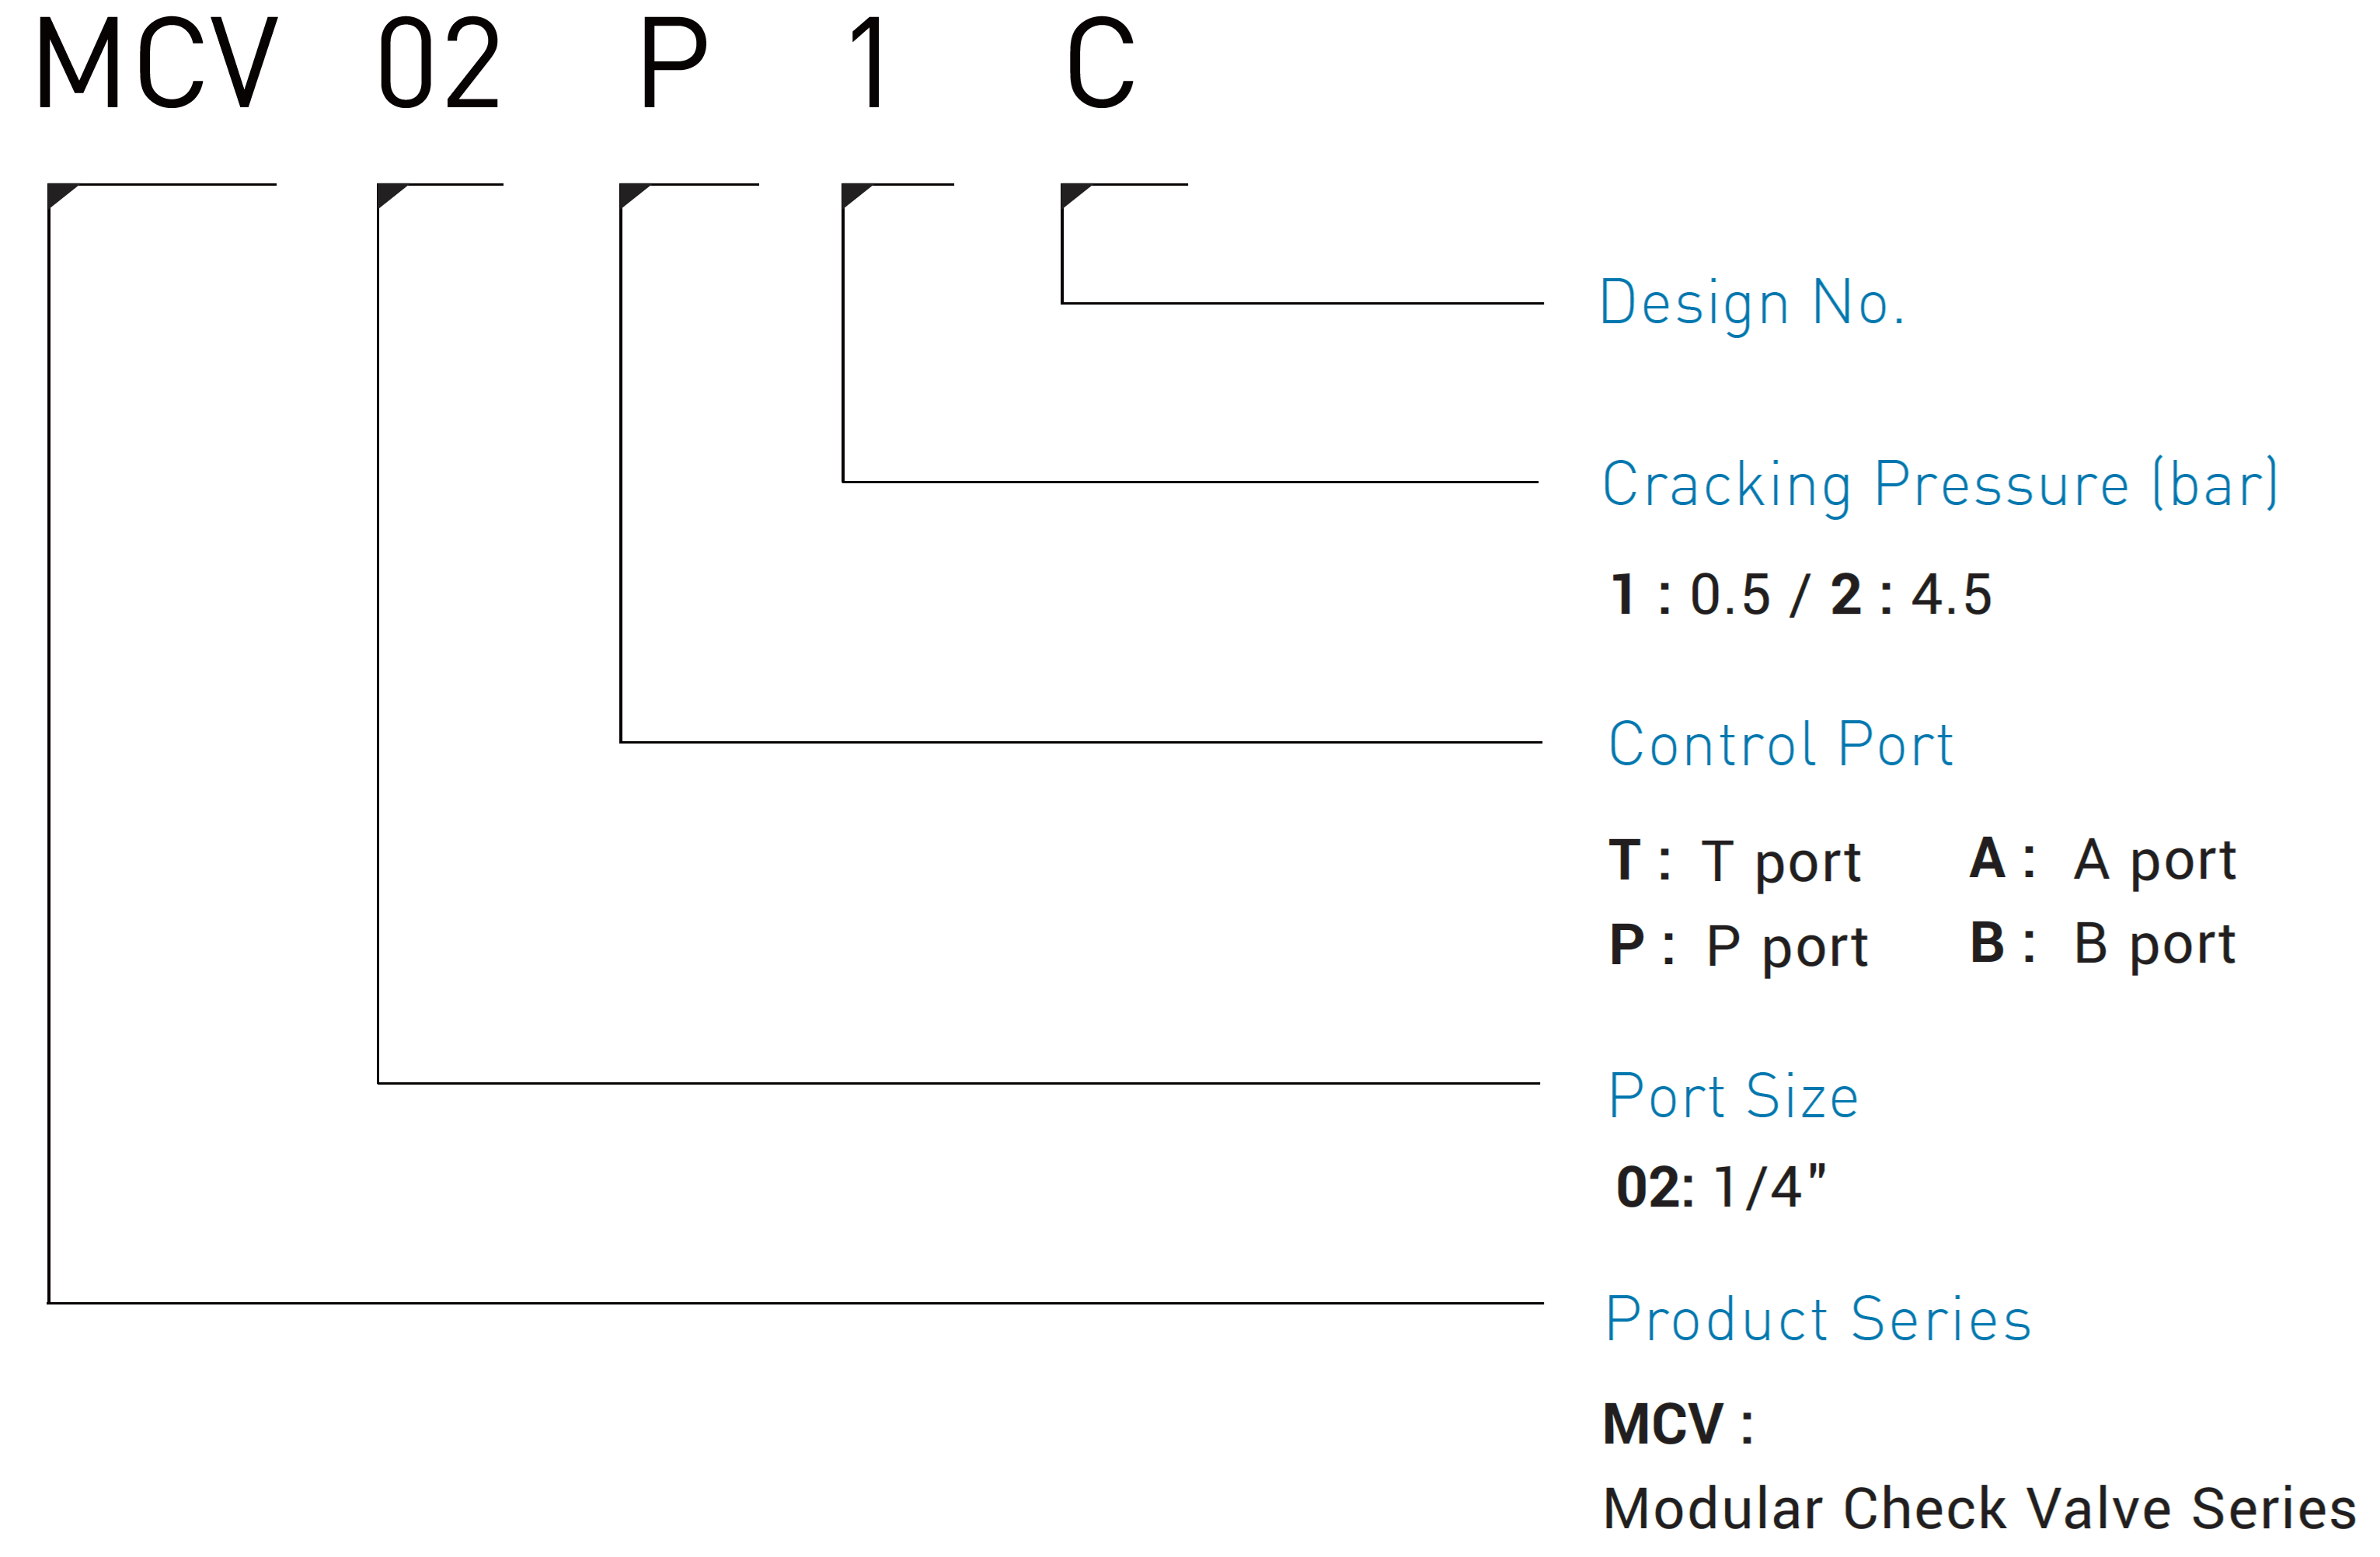 CML Modular Check Valve MCV Model Code